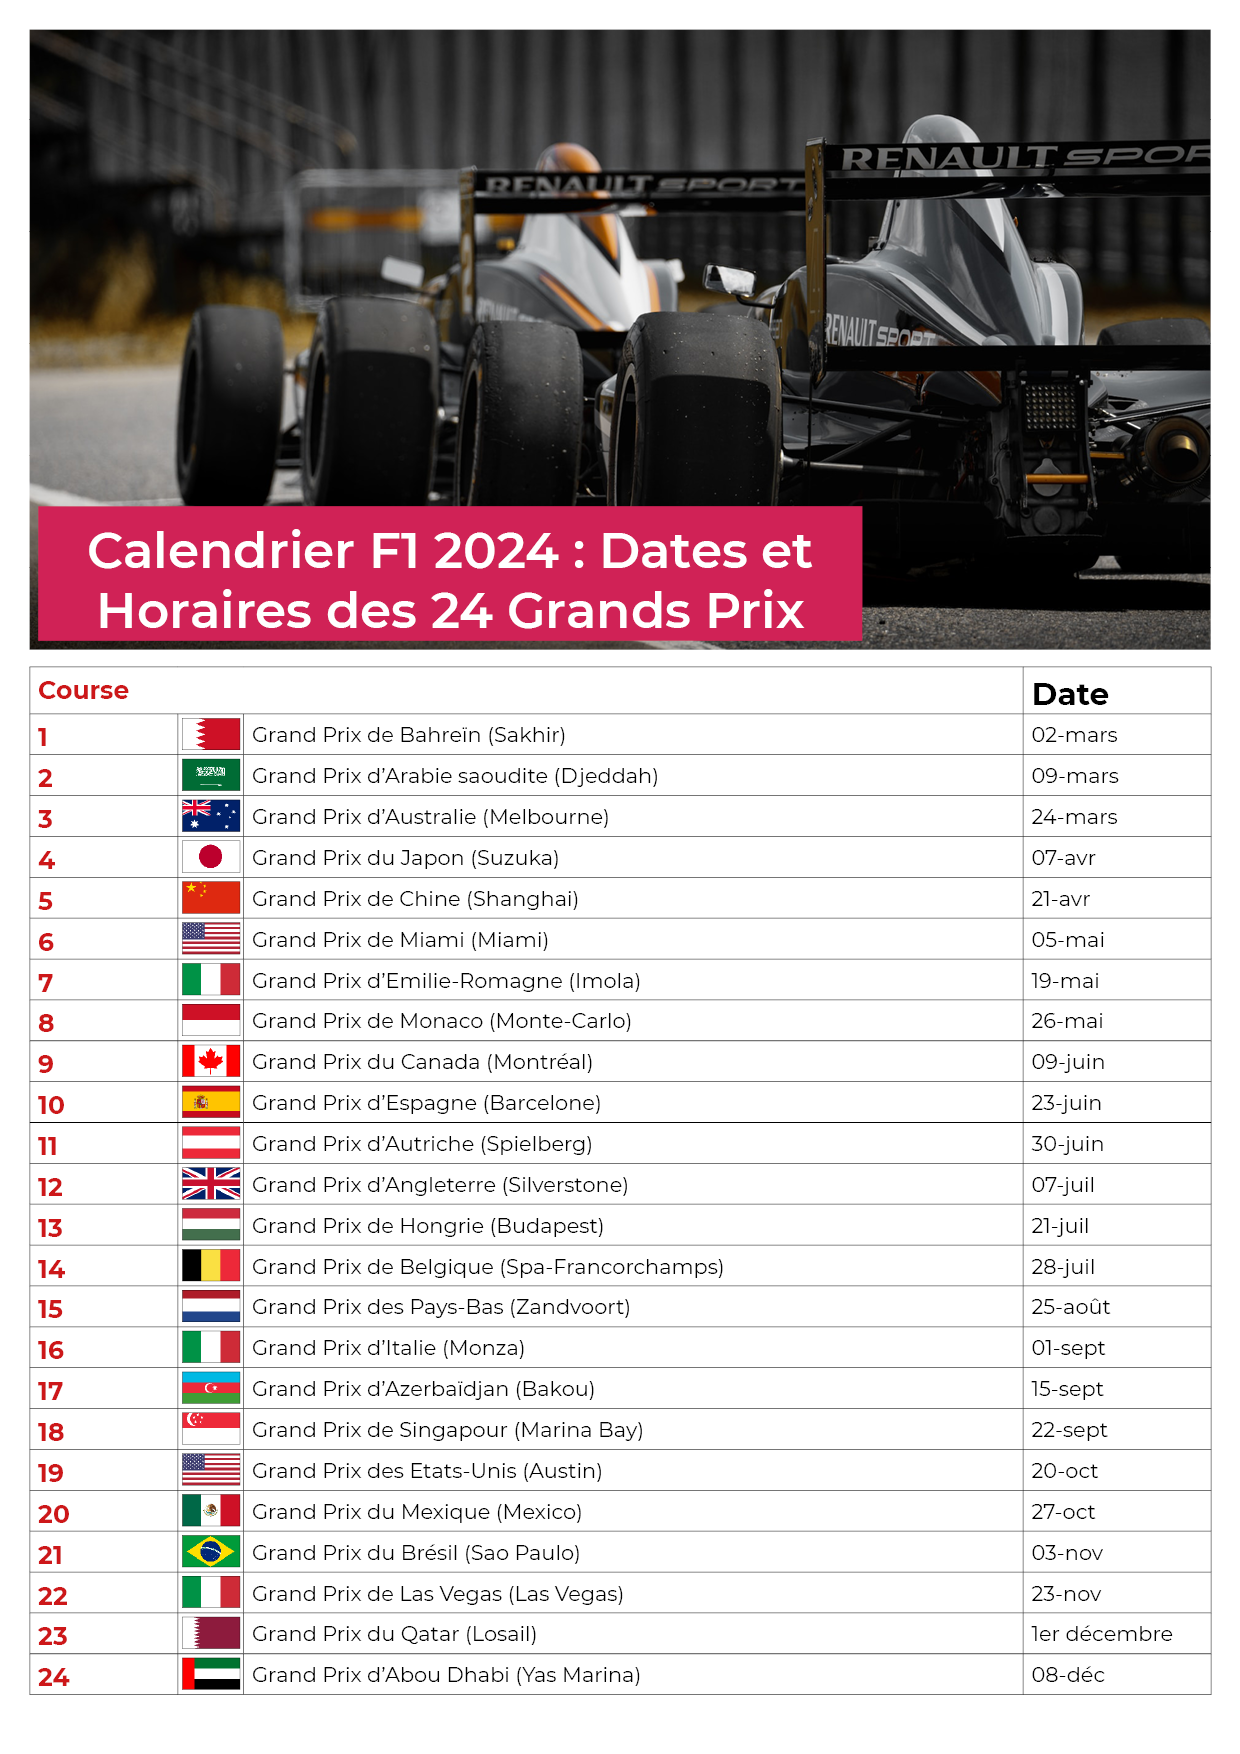 Calendrier de F1 2024: toutes les dates de la Formule 1